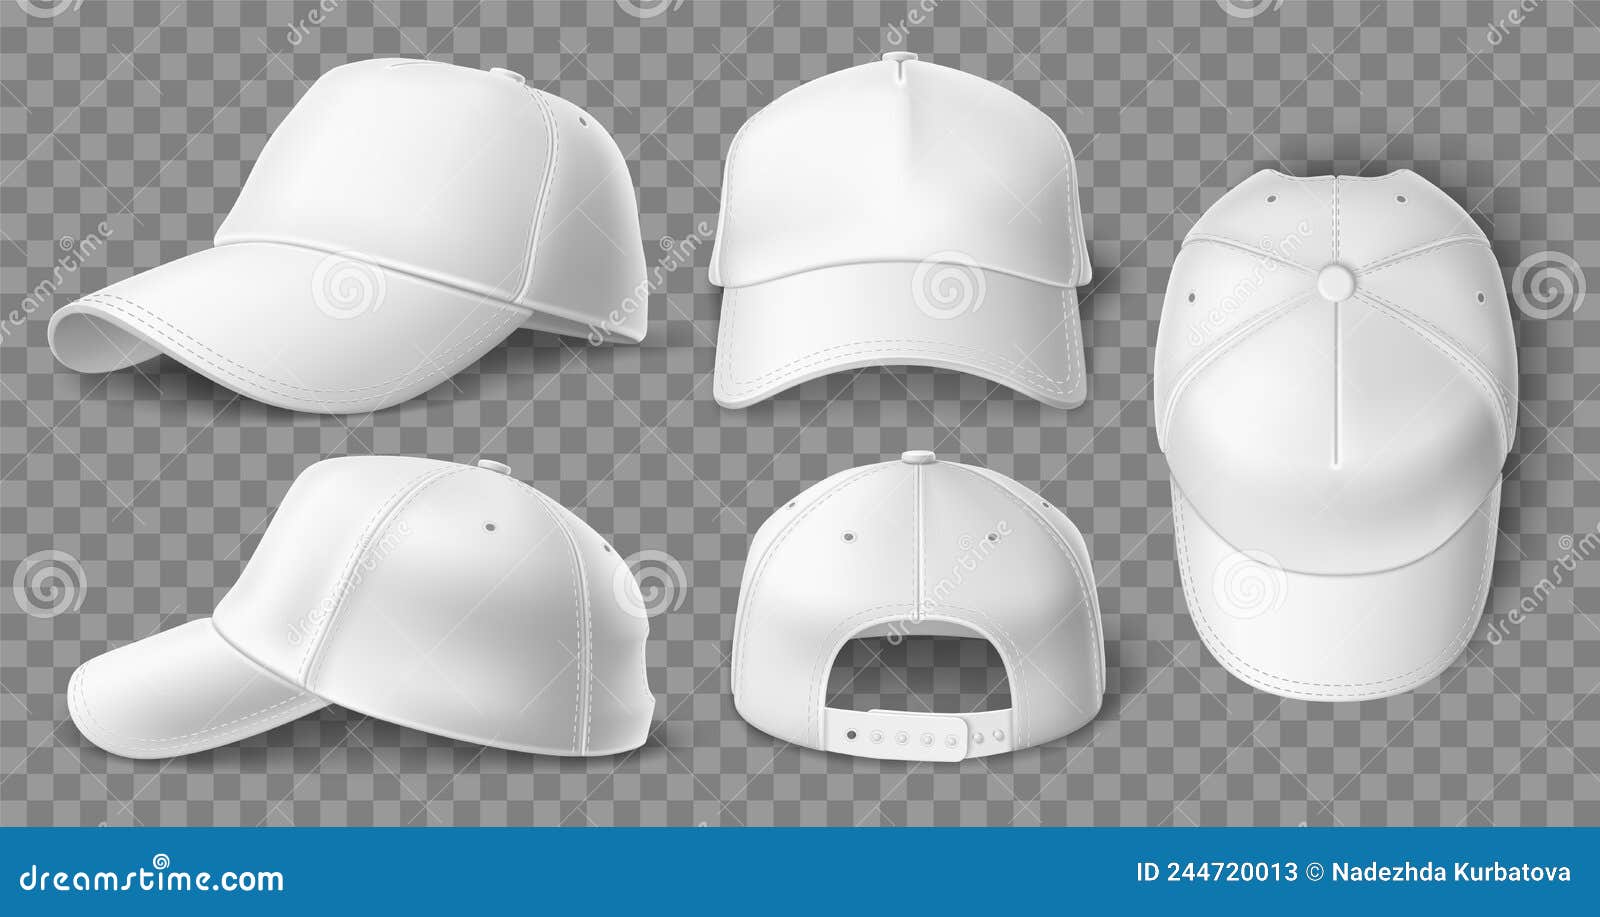 真实白色棒球帽模拟带防晒帽的3d运动帽. 空衣单元. 不同向量例证- 插画